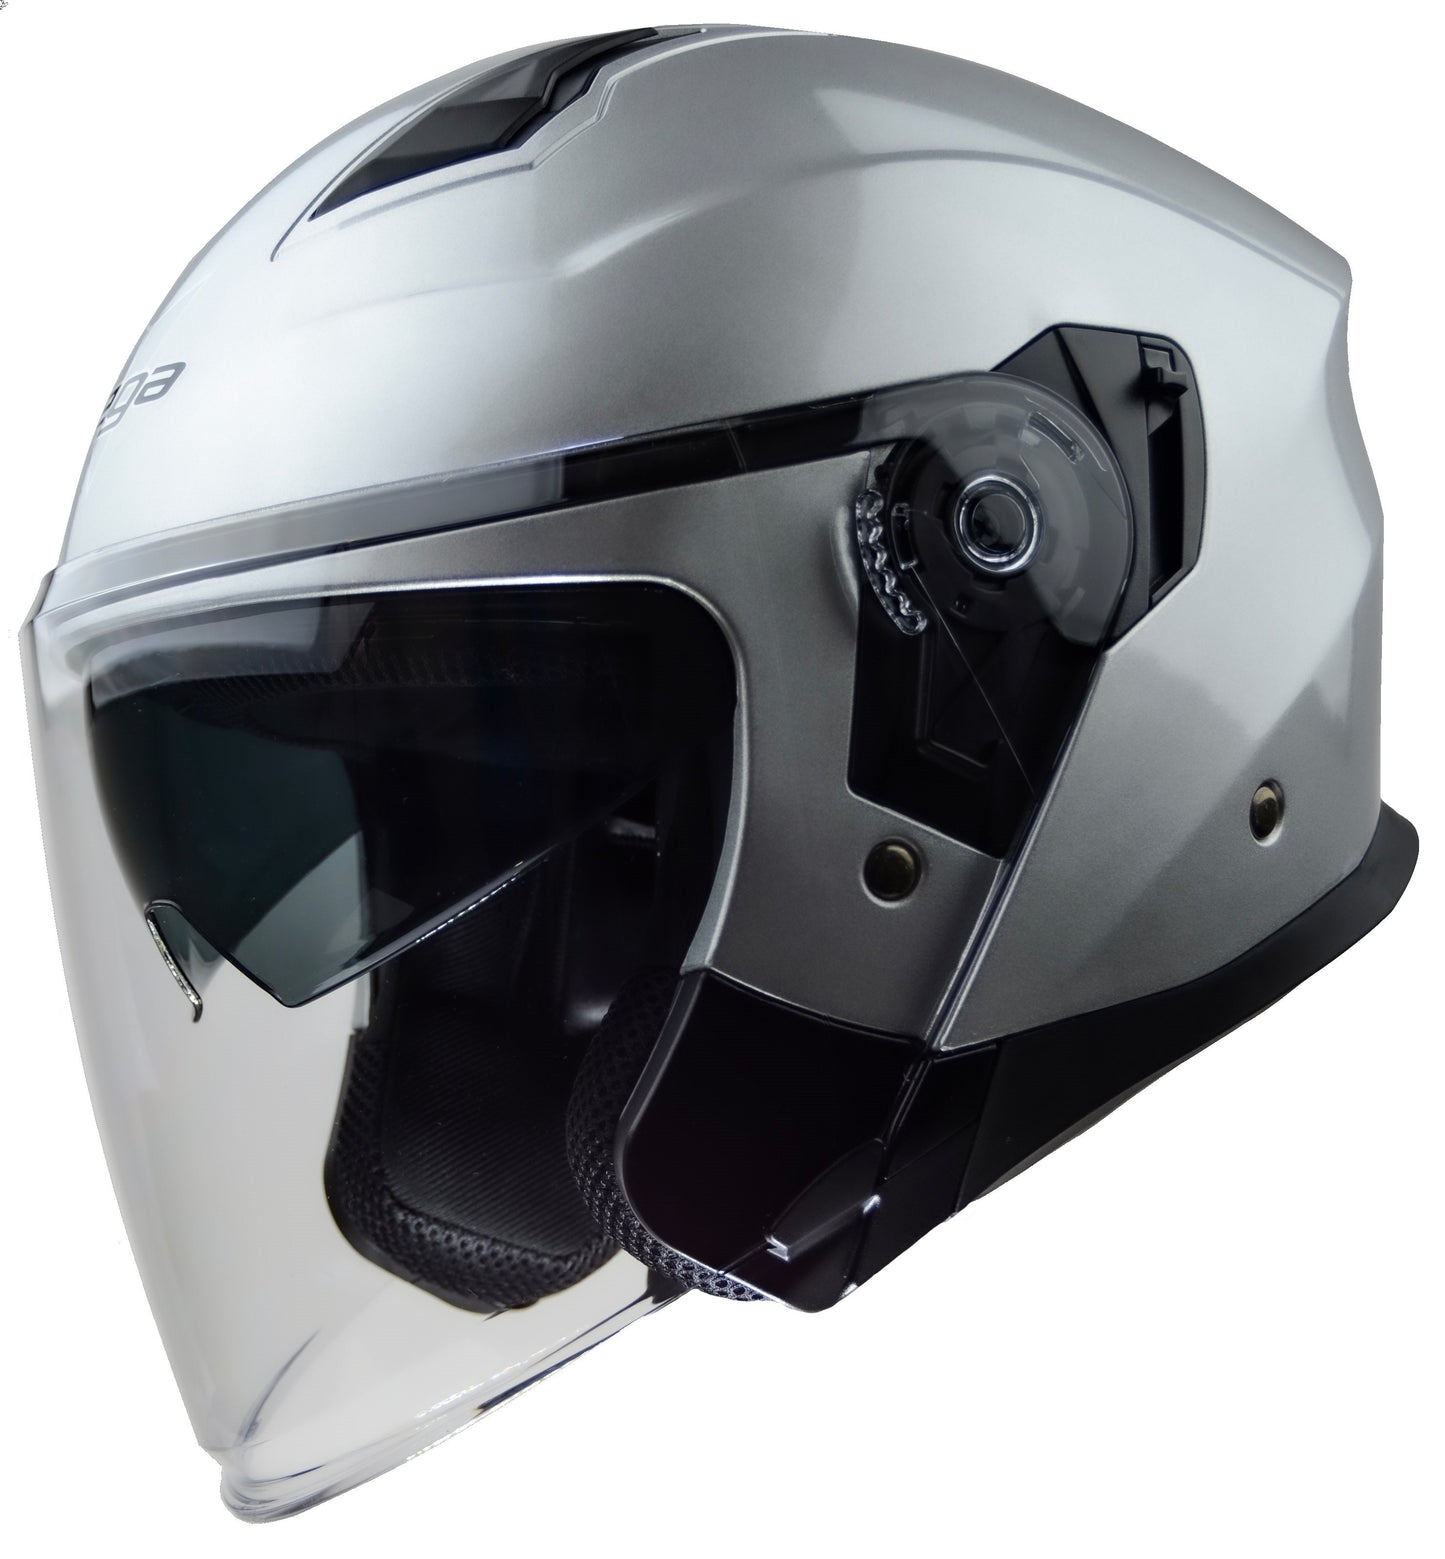 Vega Magna Touring open face Helmet - Gloss Black